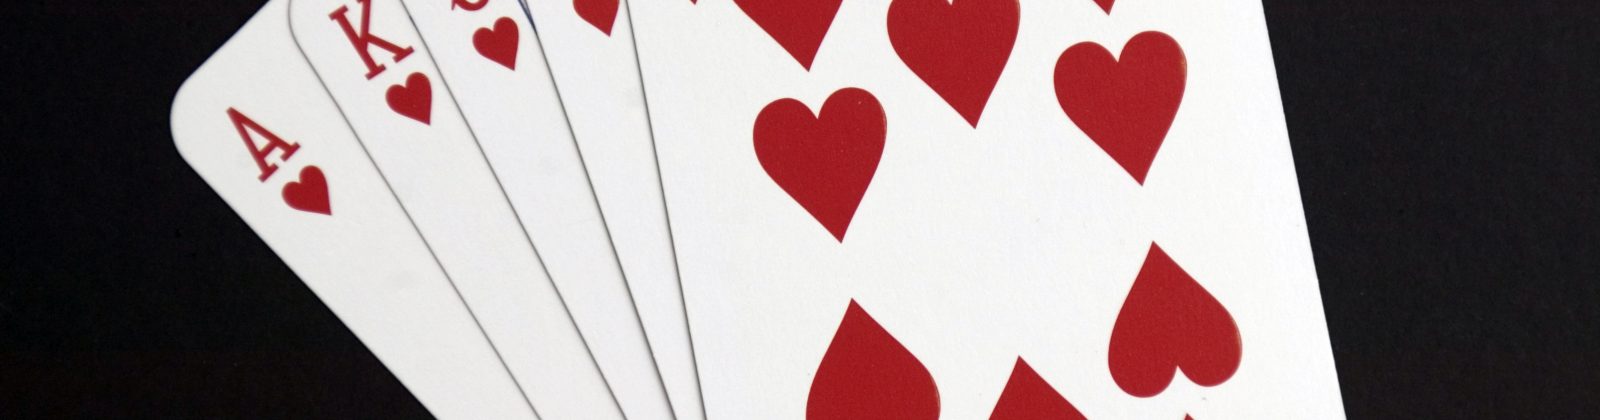 10 Susunan Kartu dalam Game Poker Online